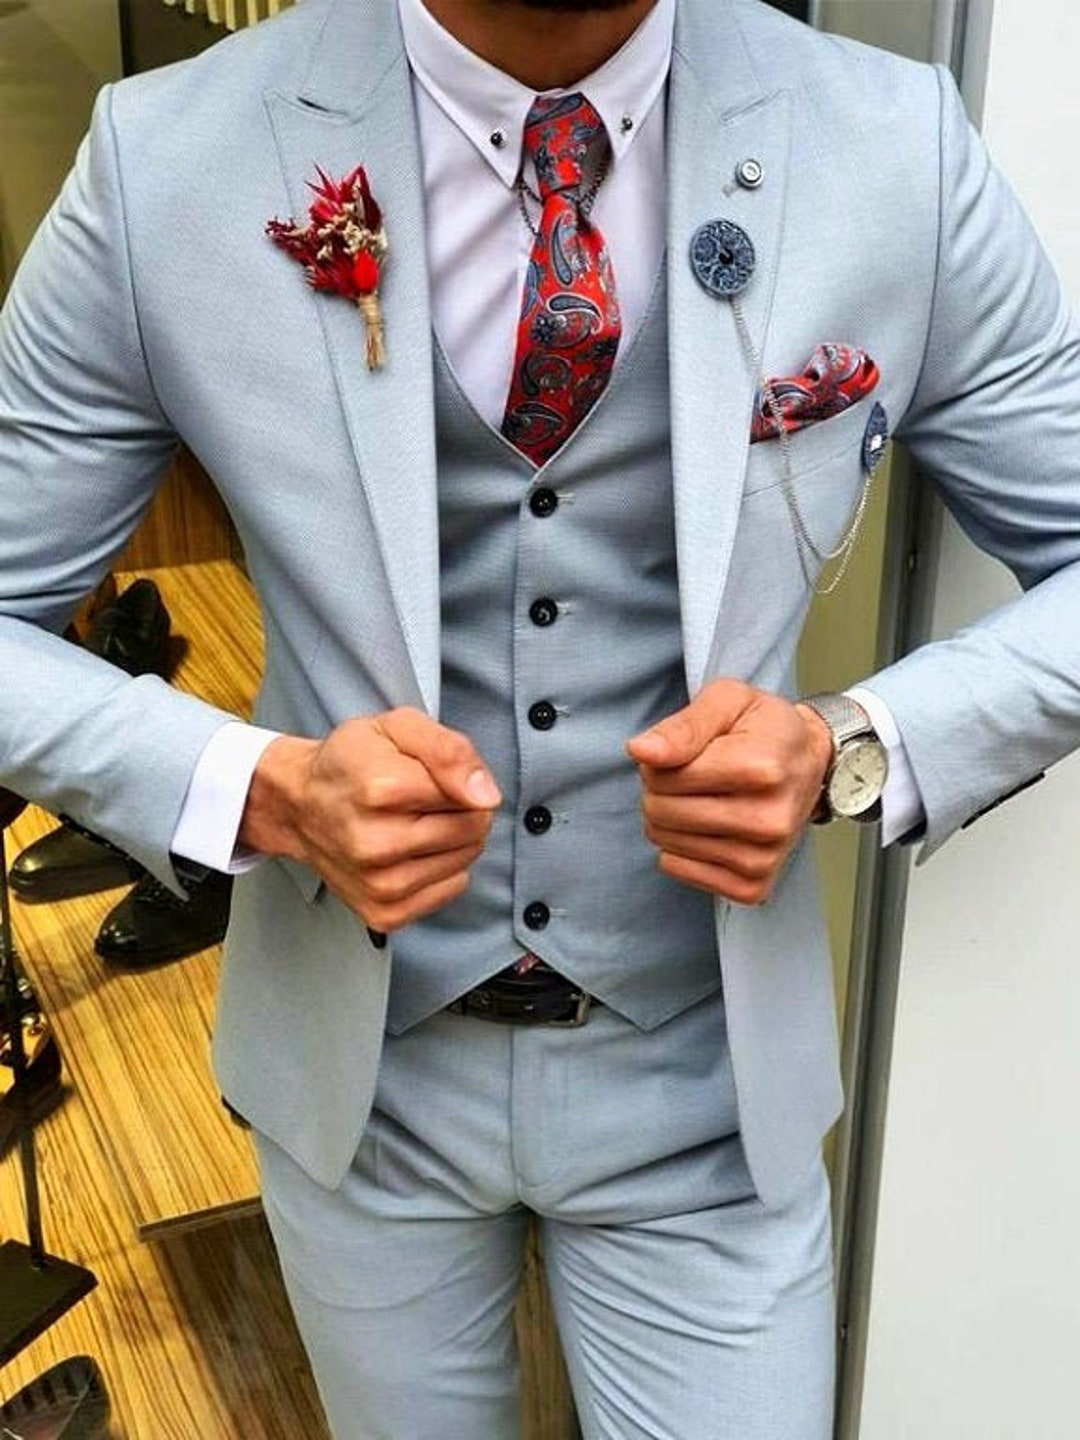 Wedding Suit Men Suits 3 Piece Suit Elegant Suit Gift for Him Suit for ...